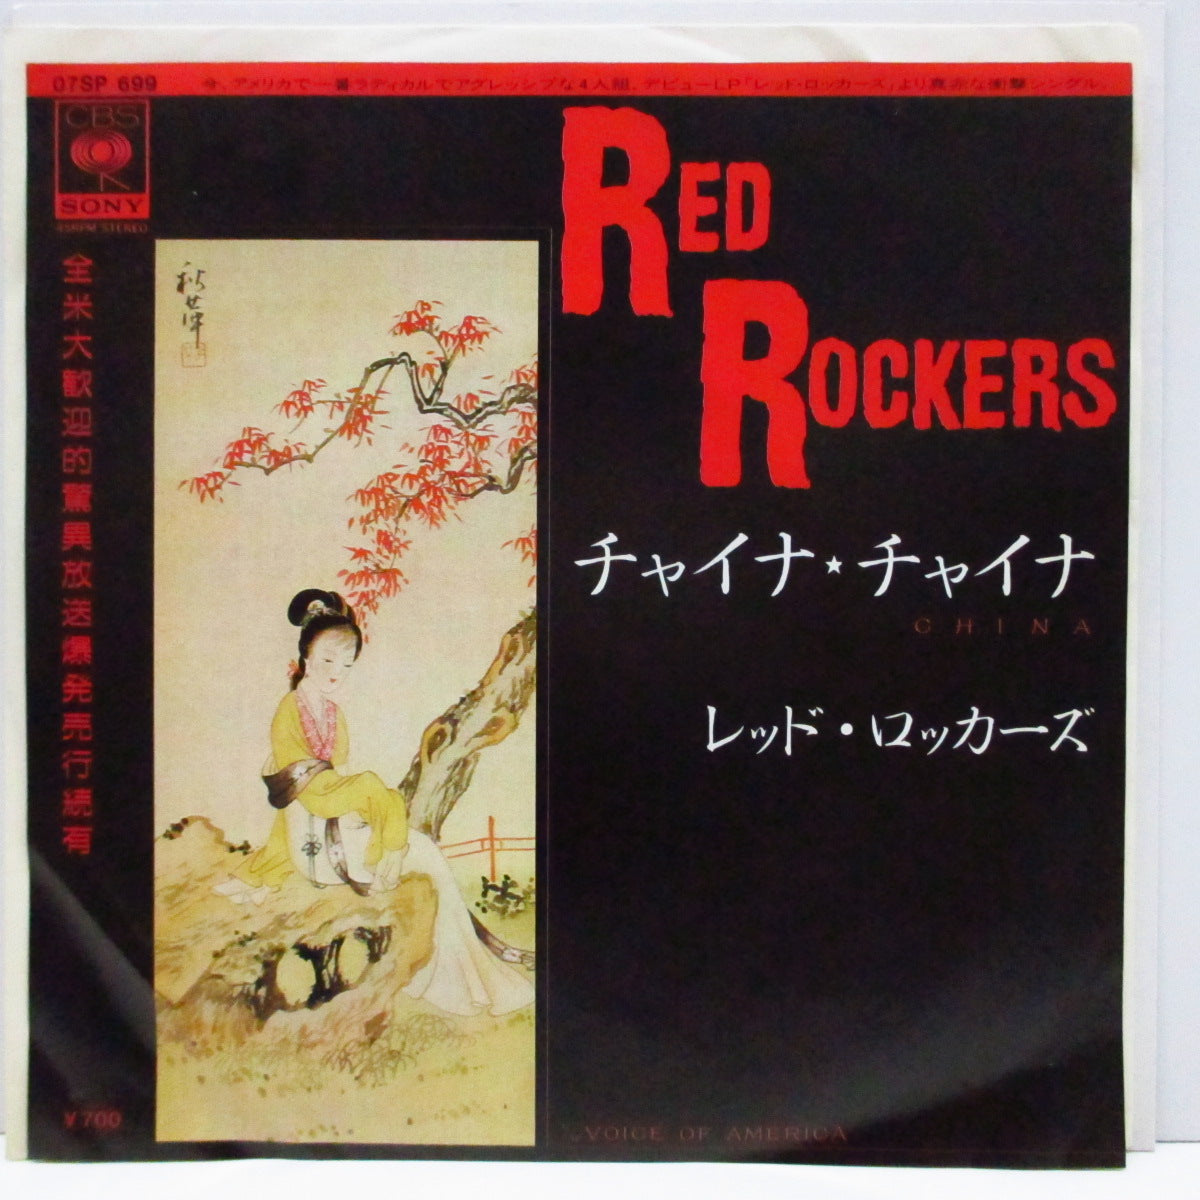 RED ROCKERS (レッド・ロッカーズ) - China (Japan Orig.7)